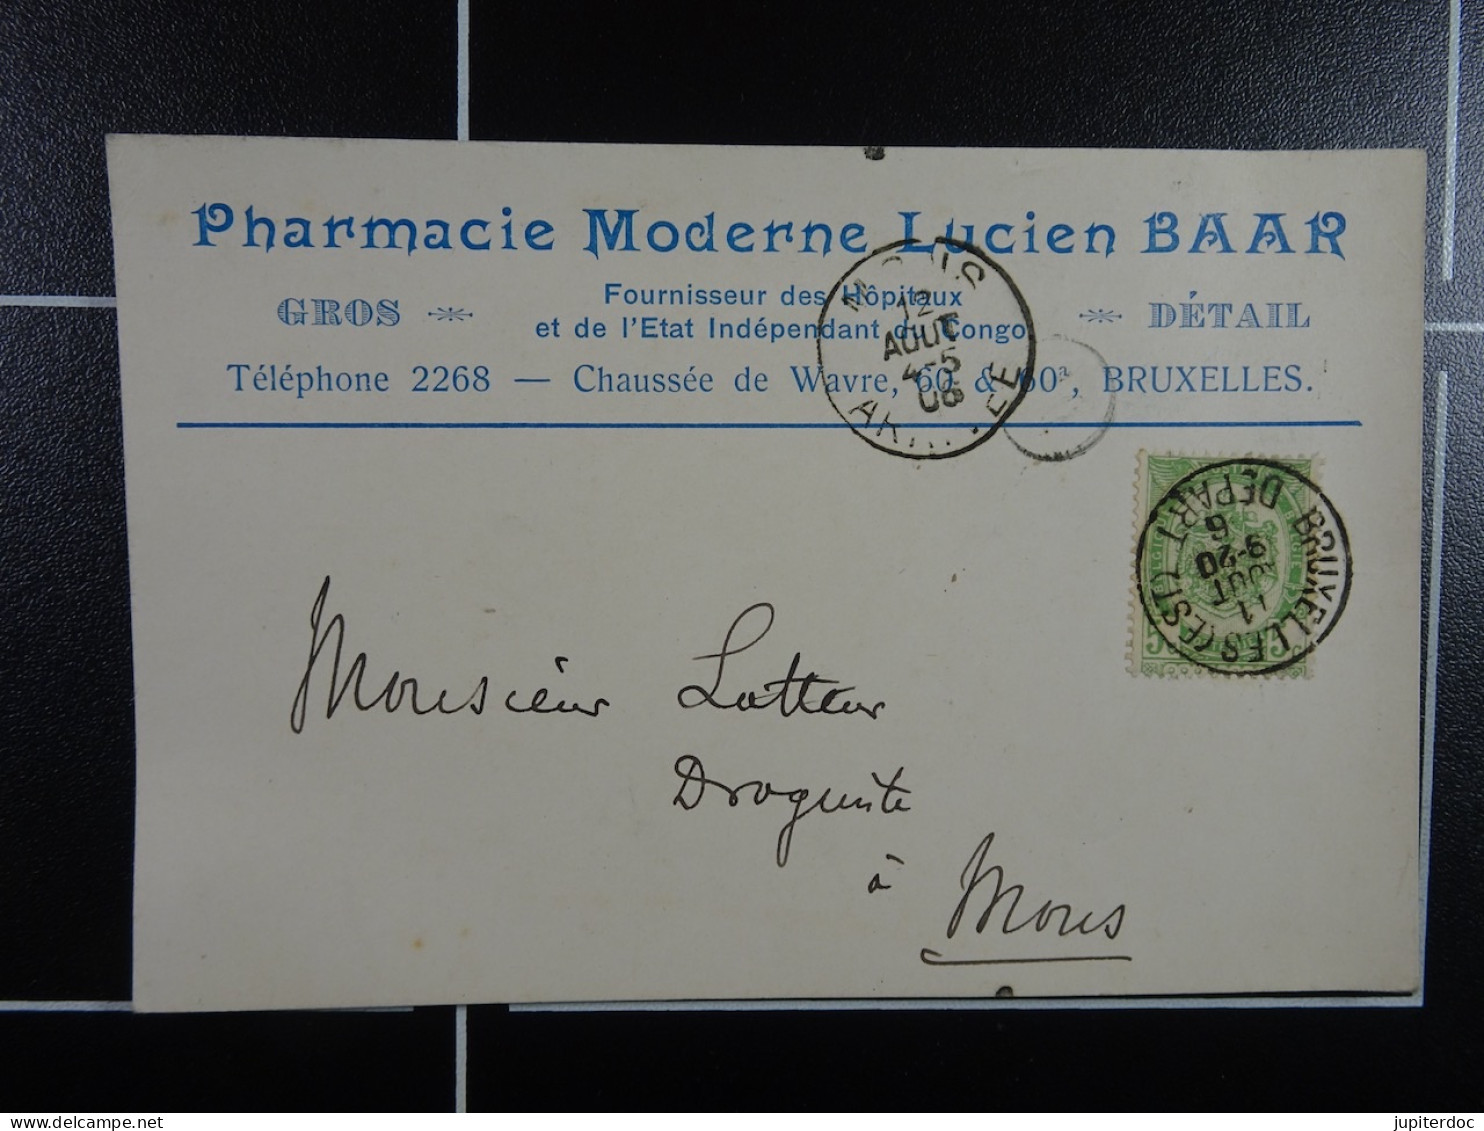 Pharmacie Moderne Lucien Baar Fournisseur Des Hôpitaux Et L'Etat Indépendant Du Congo Bruxelles - Marchands